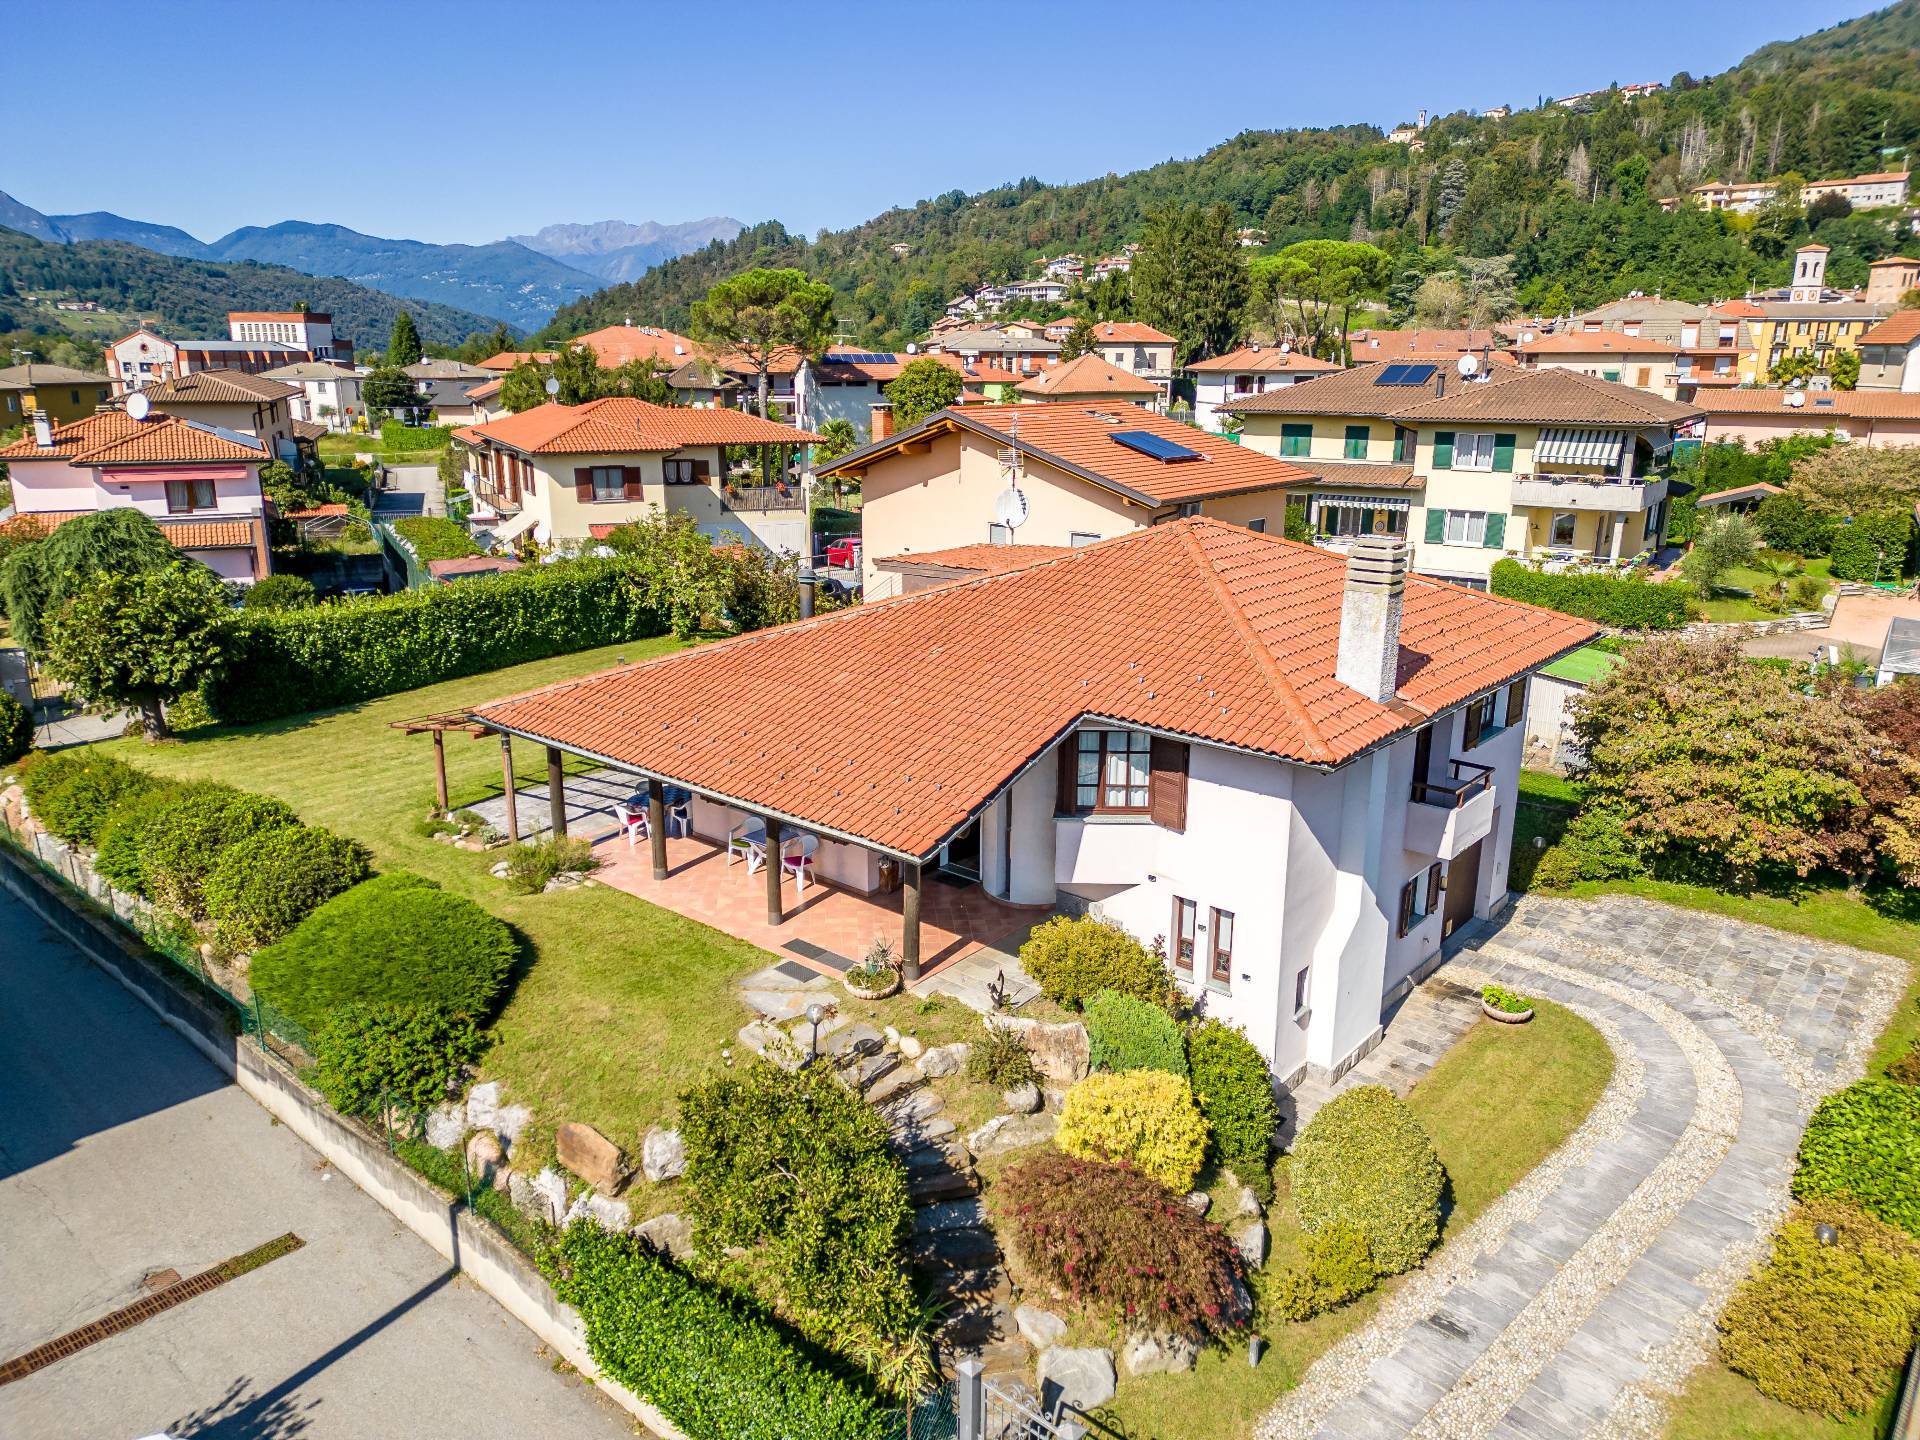 Villa in vendita a Grantola, 4 locali, prezzo € 365.000 | PortaleAgenzieImmobiliari.it